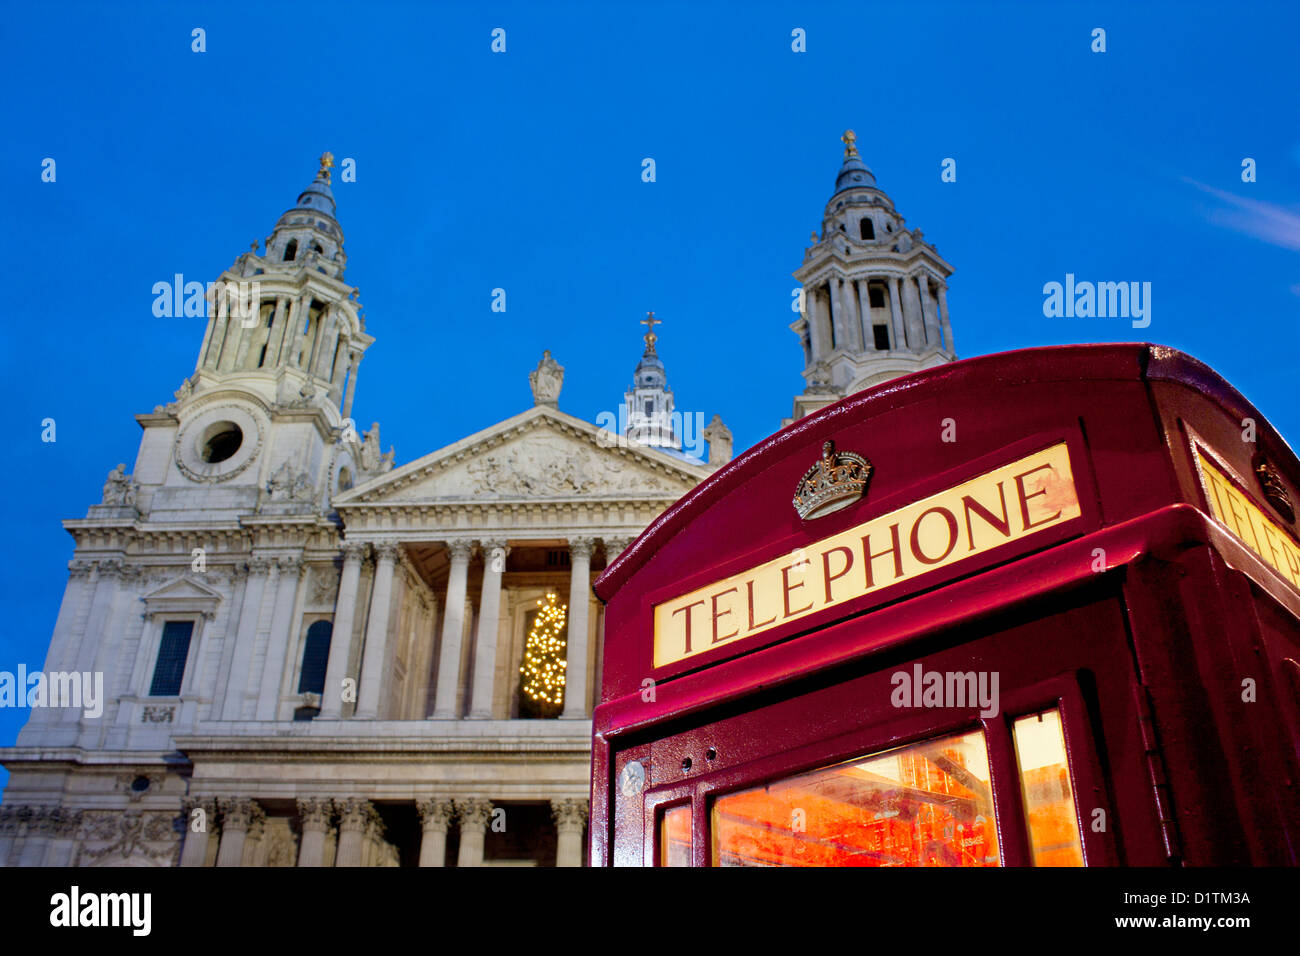 La Cathédrale St Paul de nuit / crépuscule / Crépuscule avec téléphone rouge traditionnel fort en premier plan Ville de London England UK Banque D'Images